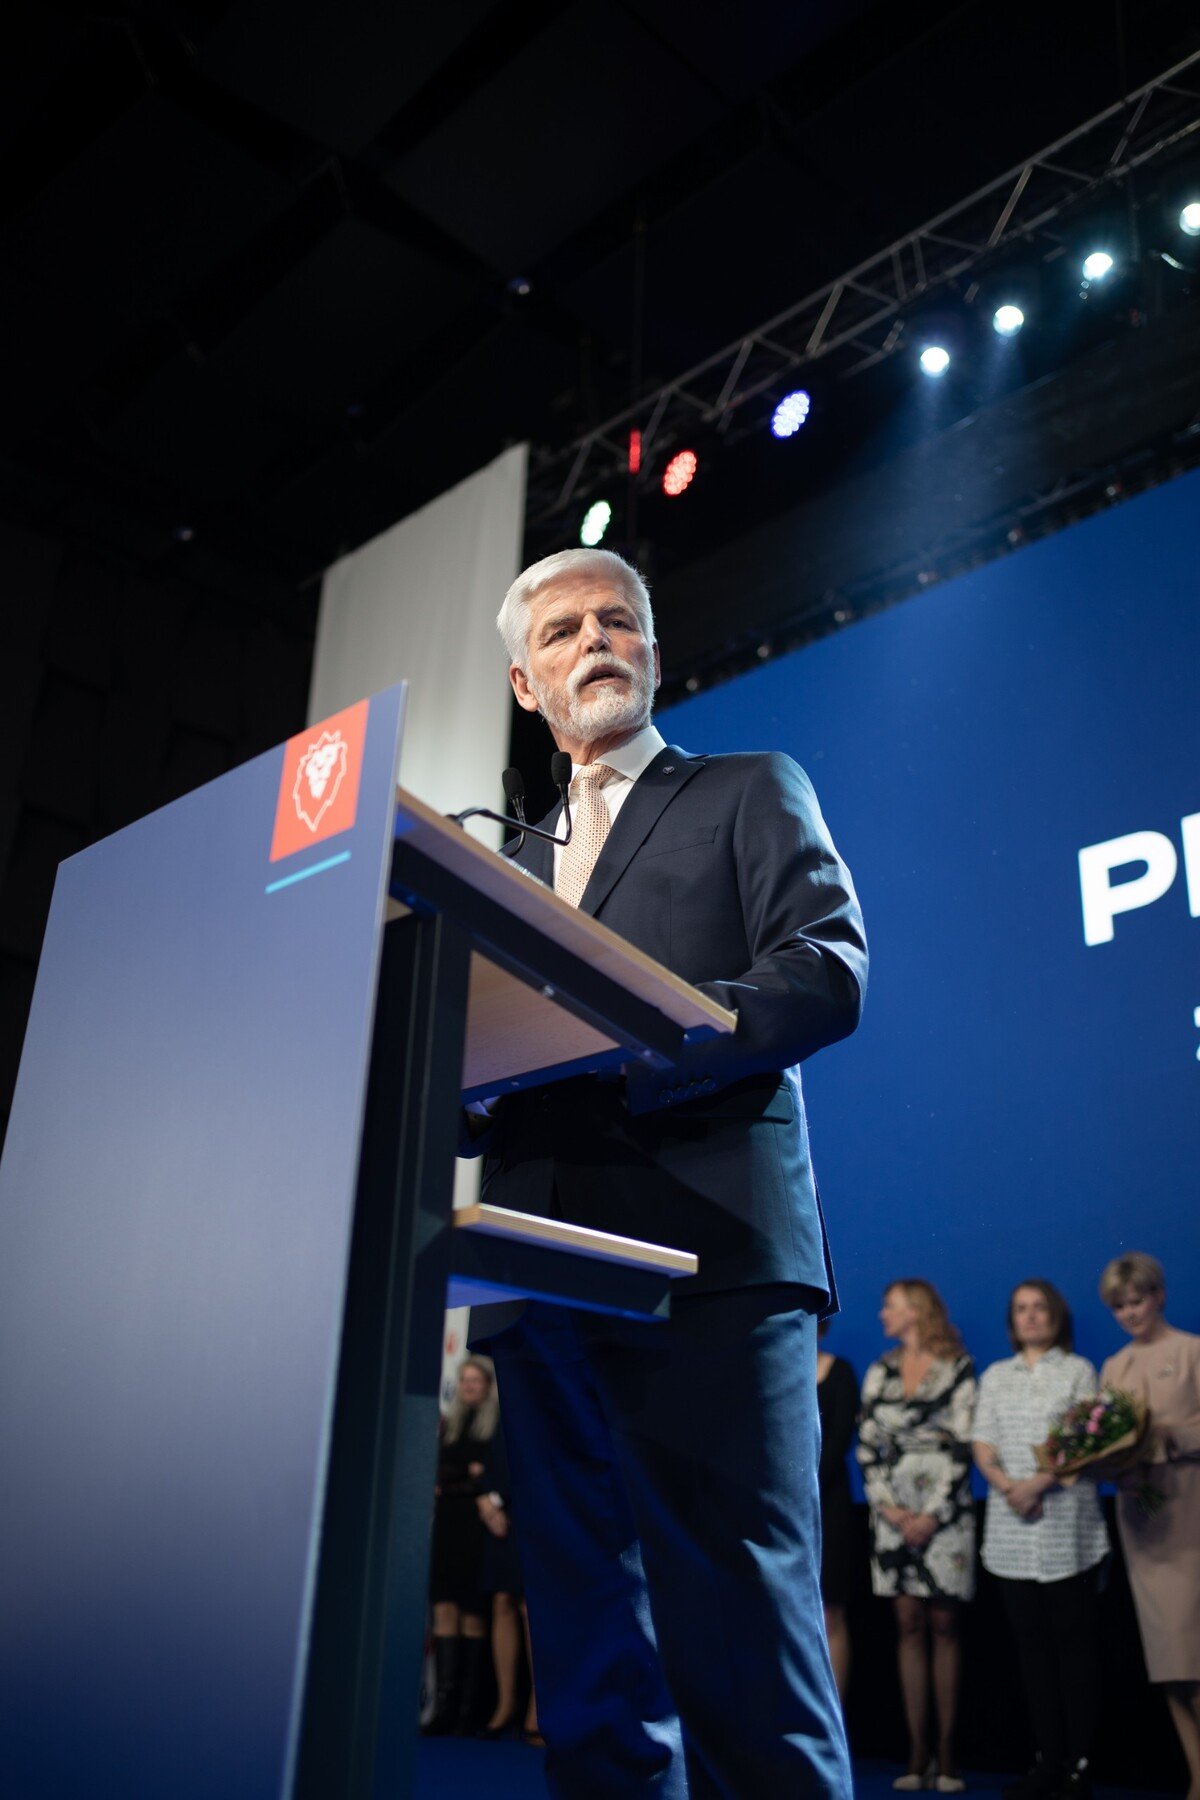 Štáb vítěze prezidentské volby Petra Pavla.